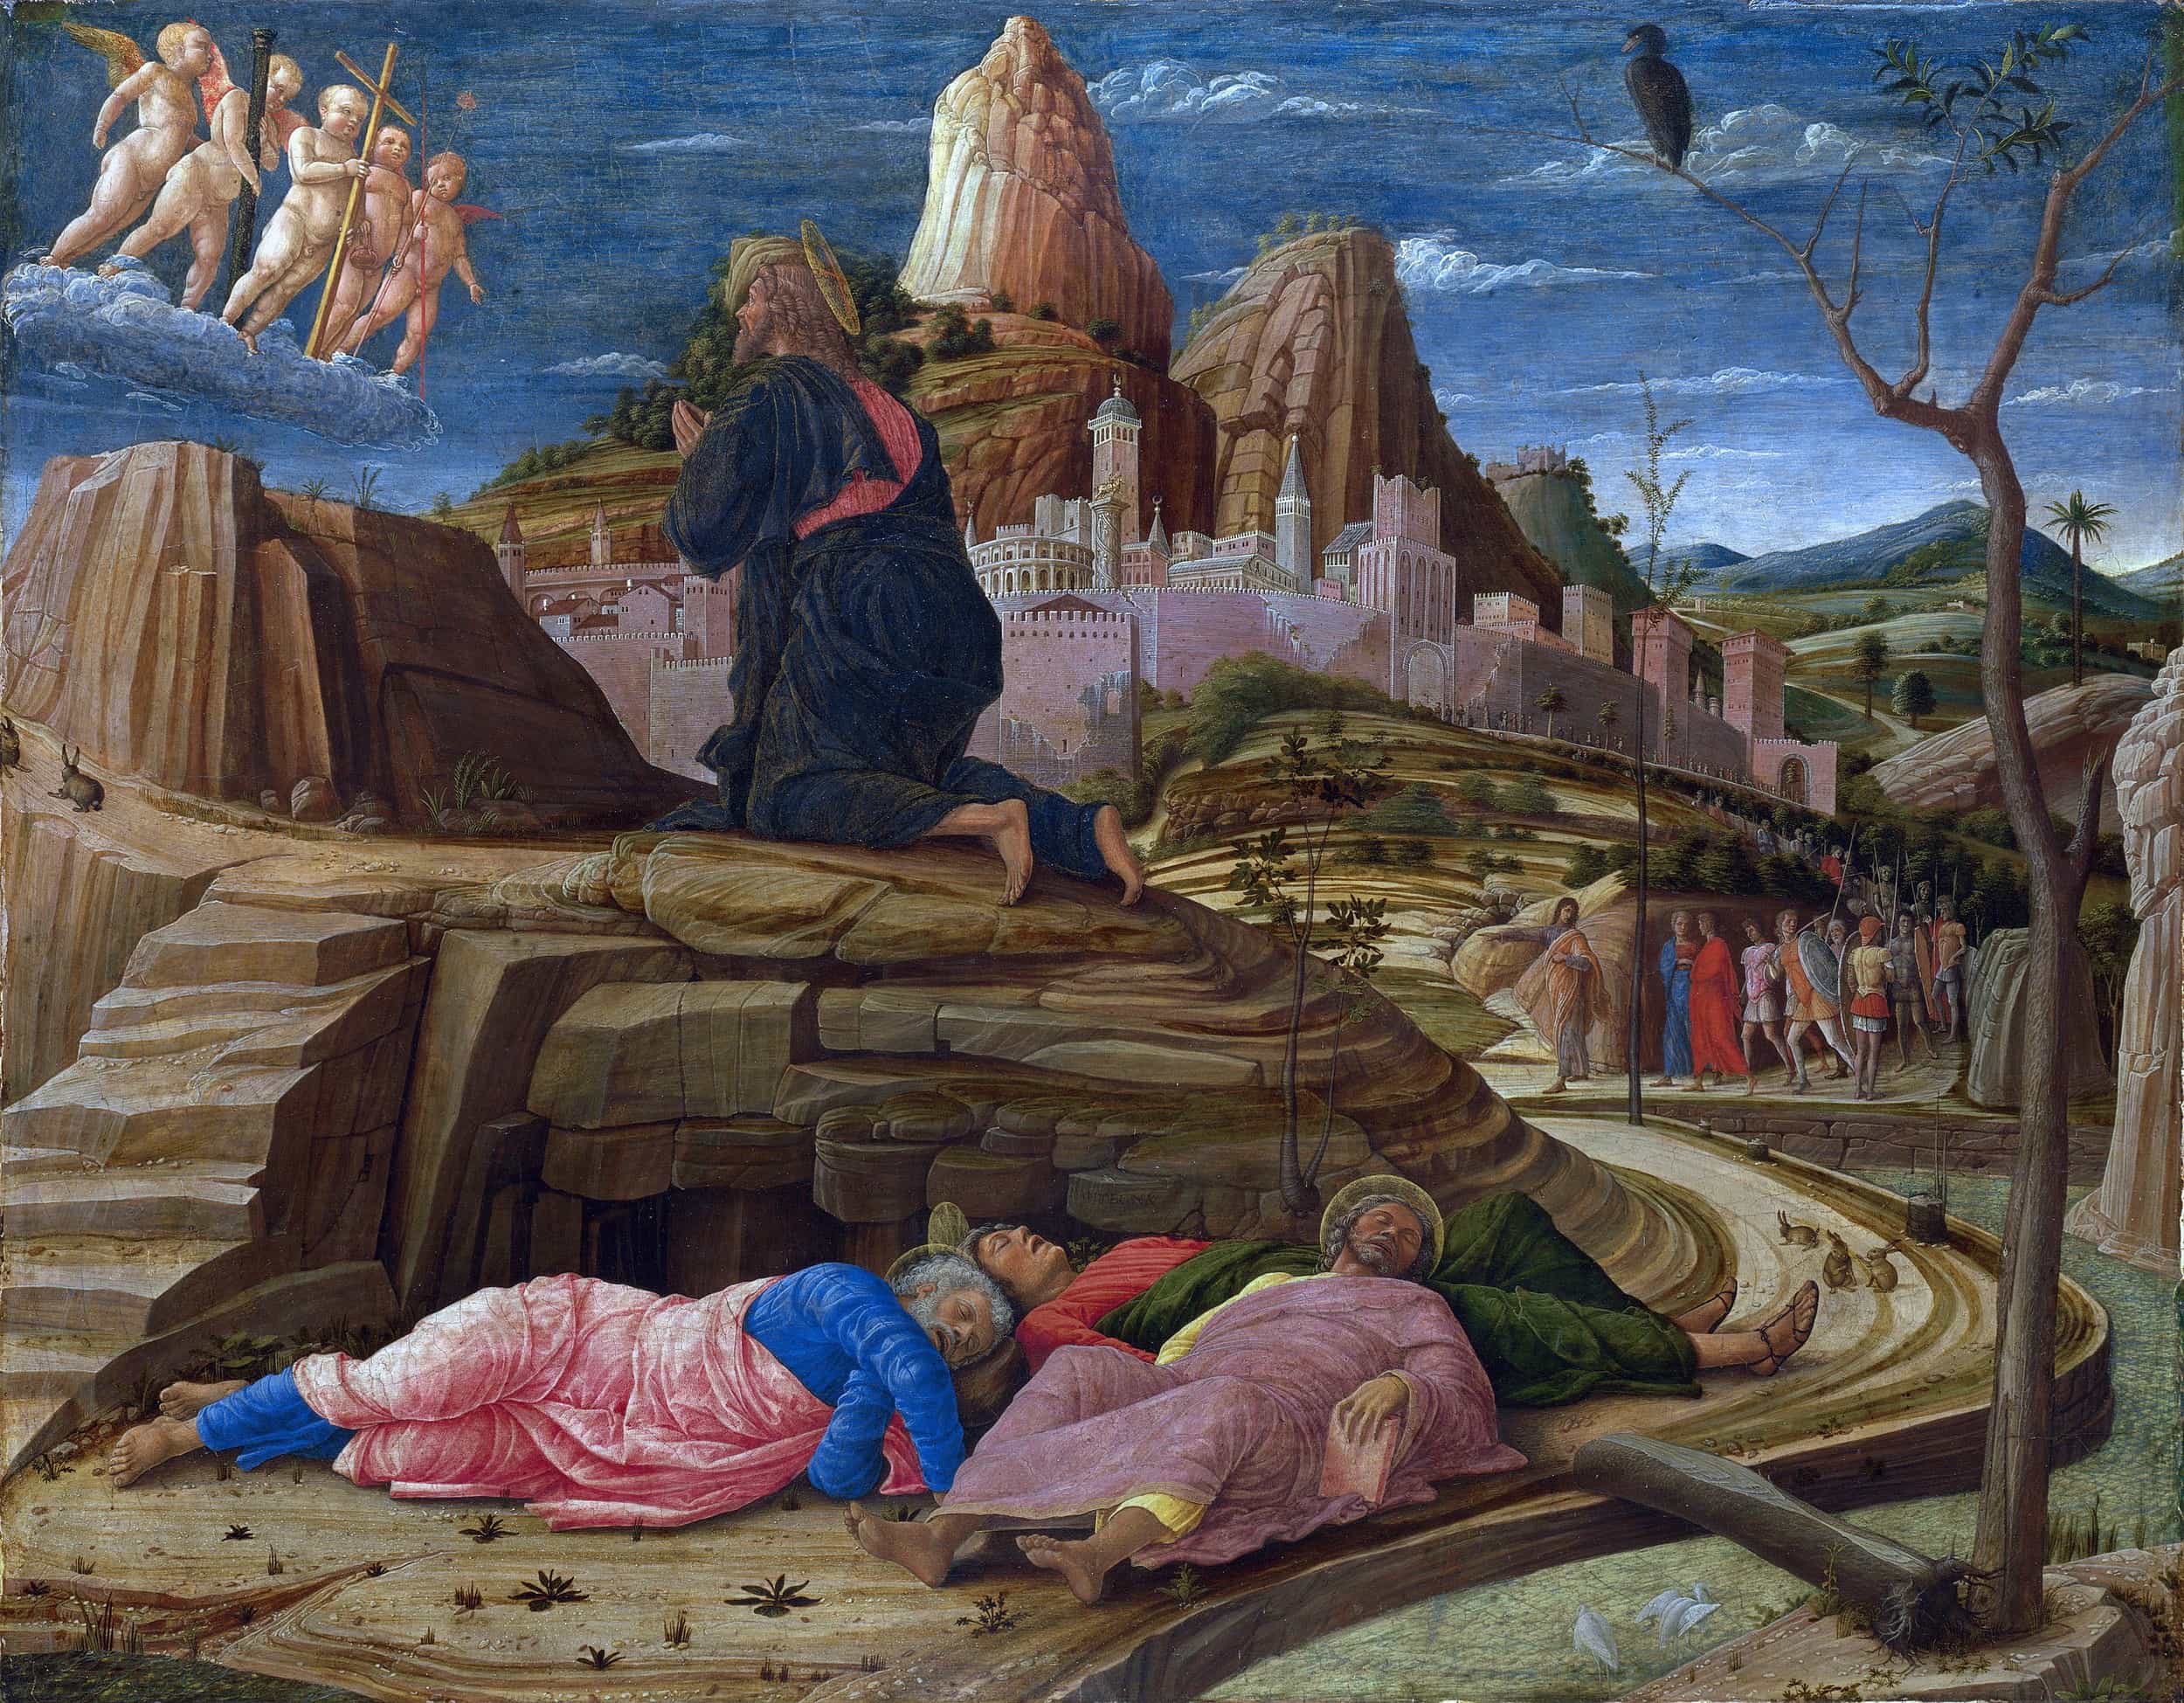 《ゲッセマネの園の苦悩》 アンドレア・マンテーニャ  【1455-56年頃】